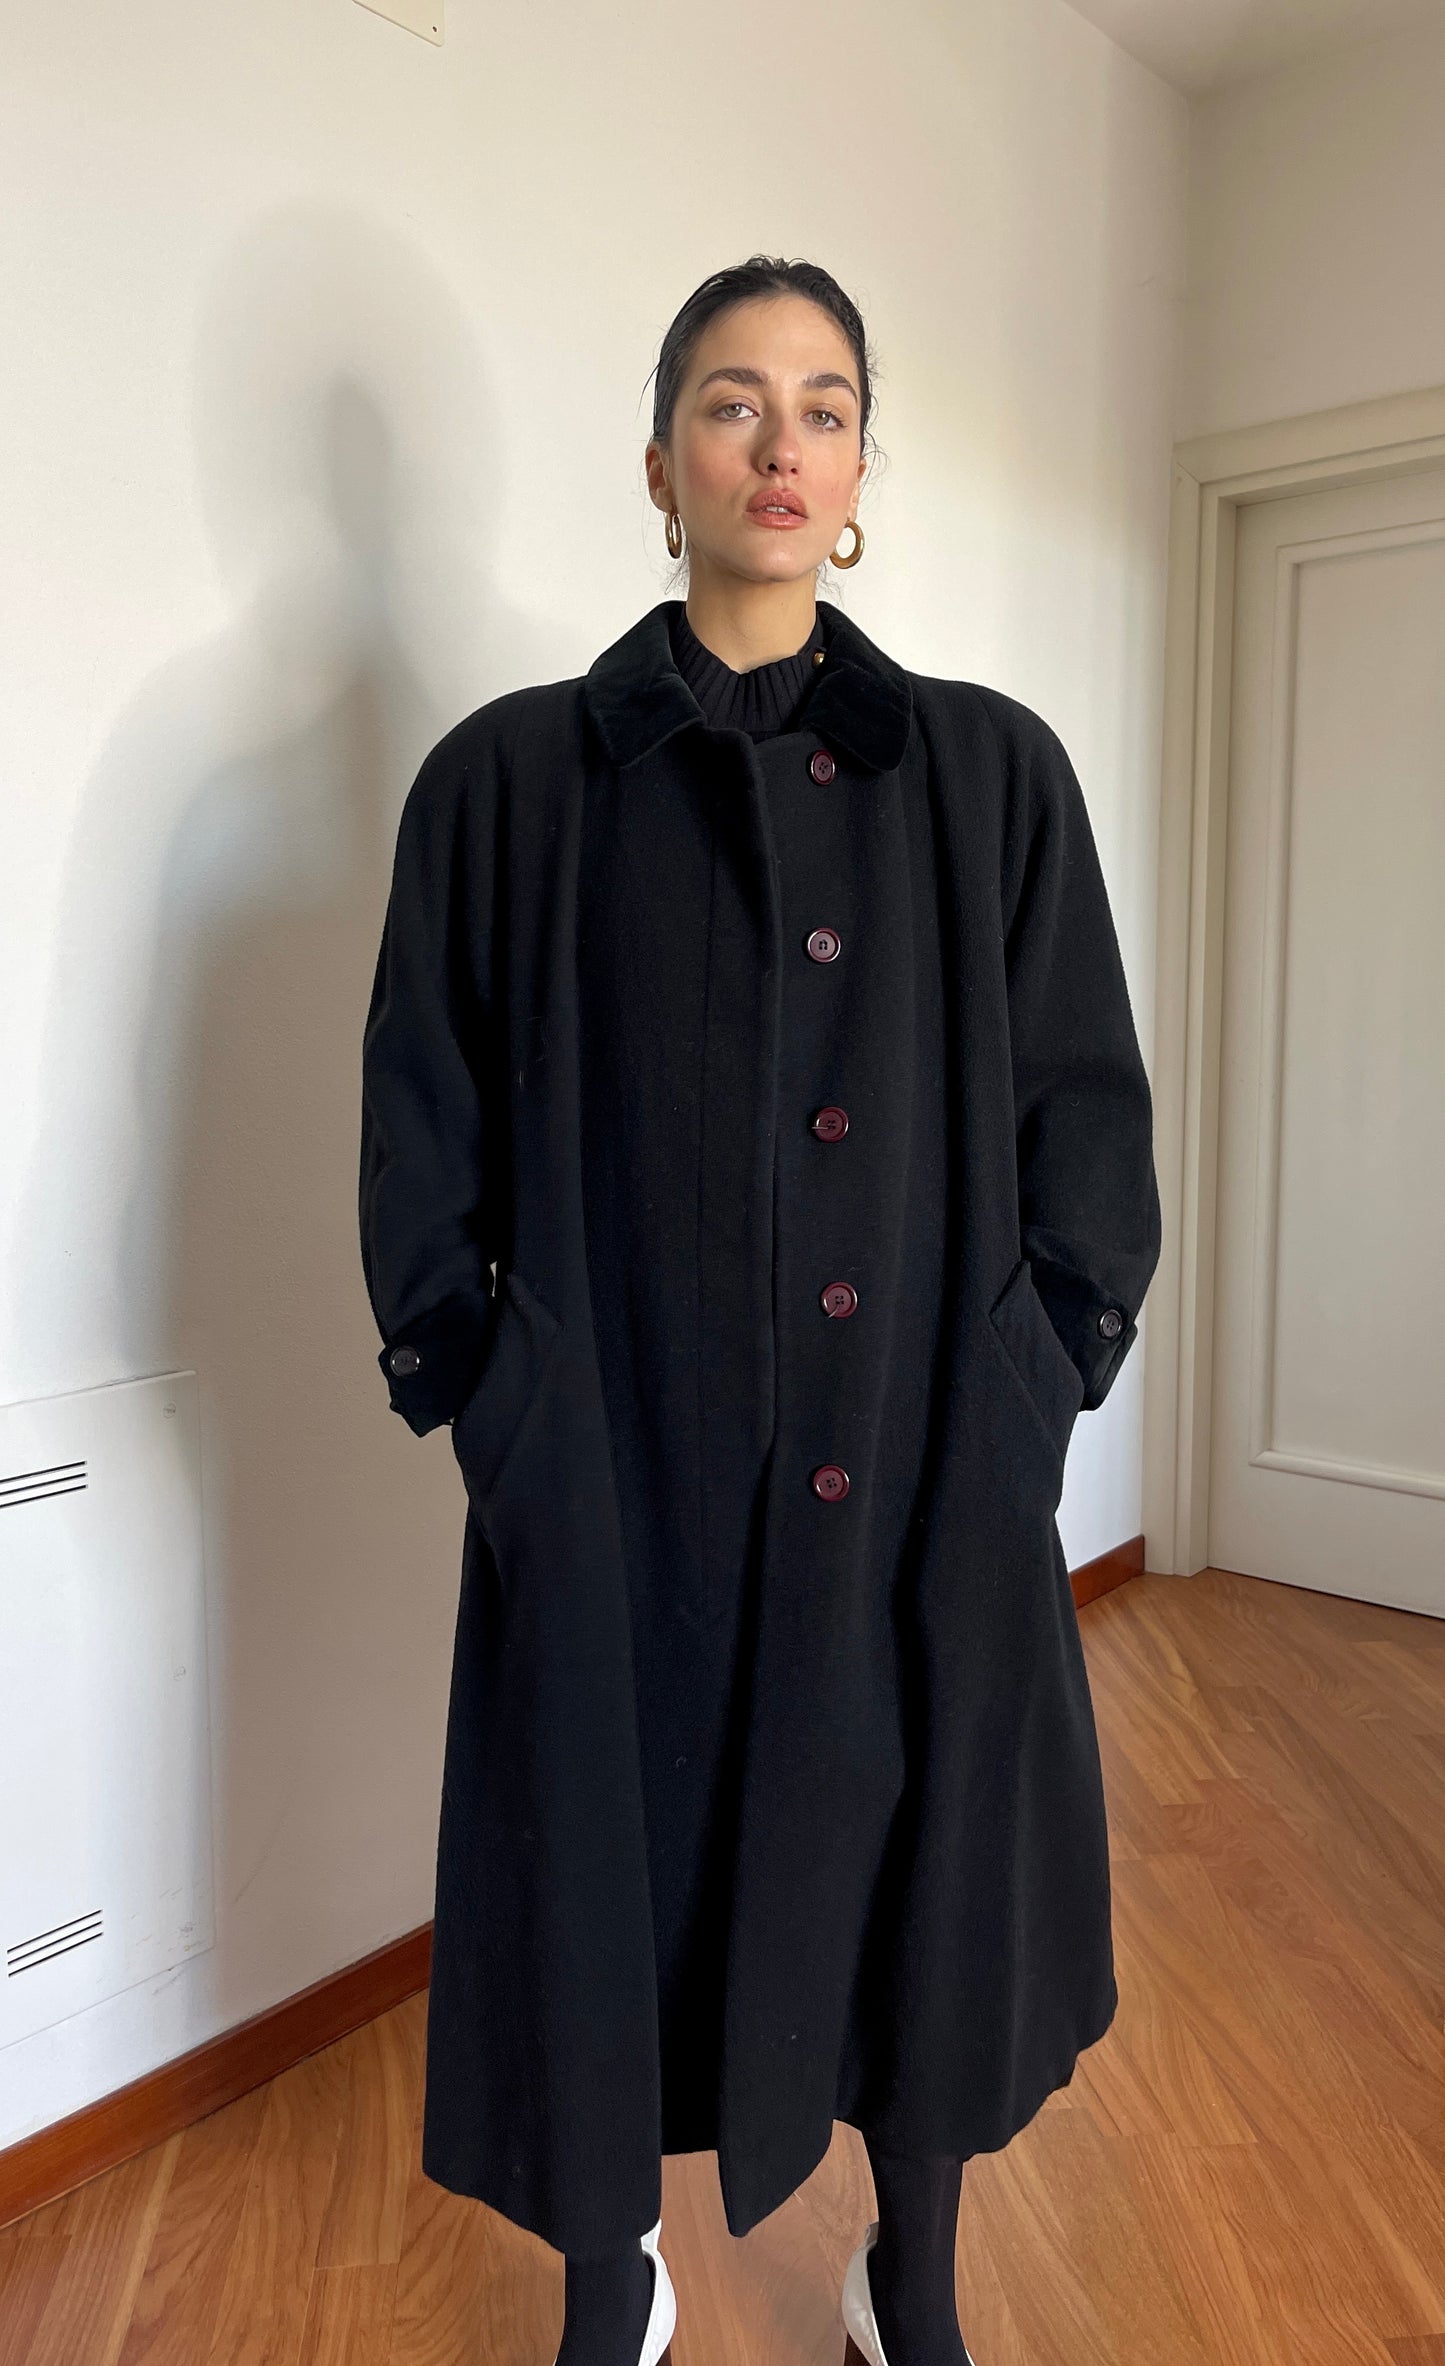 Black wool and velvet coat